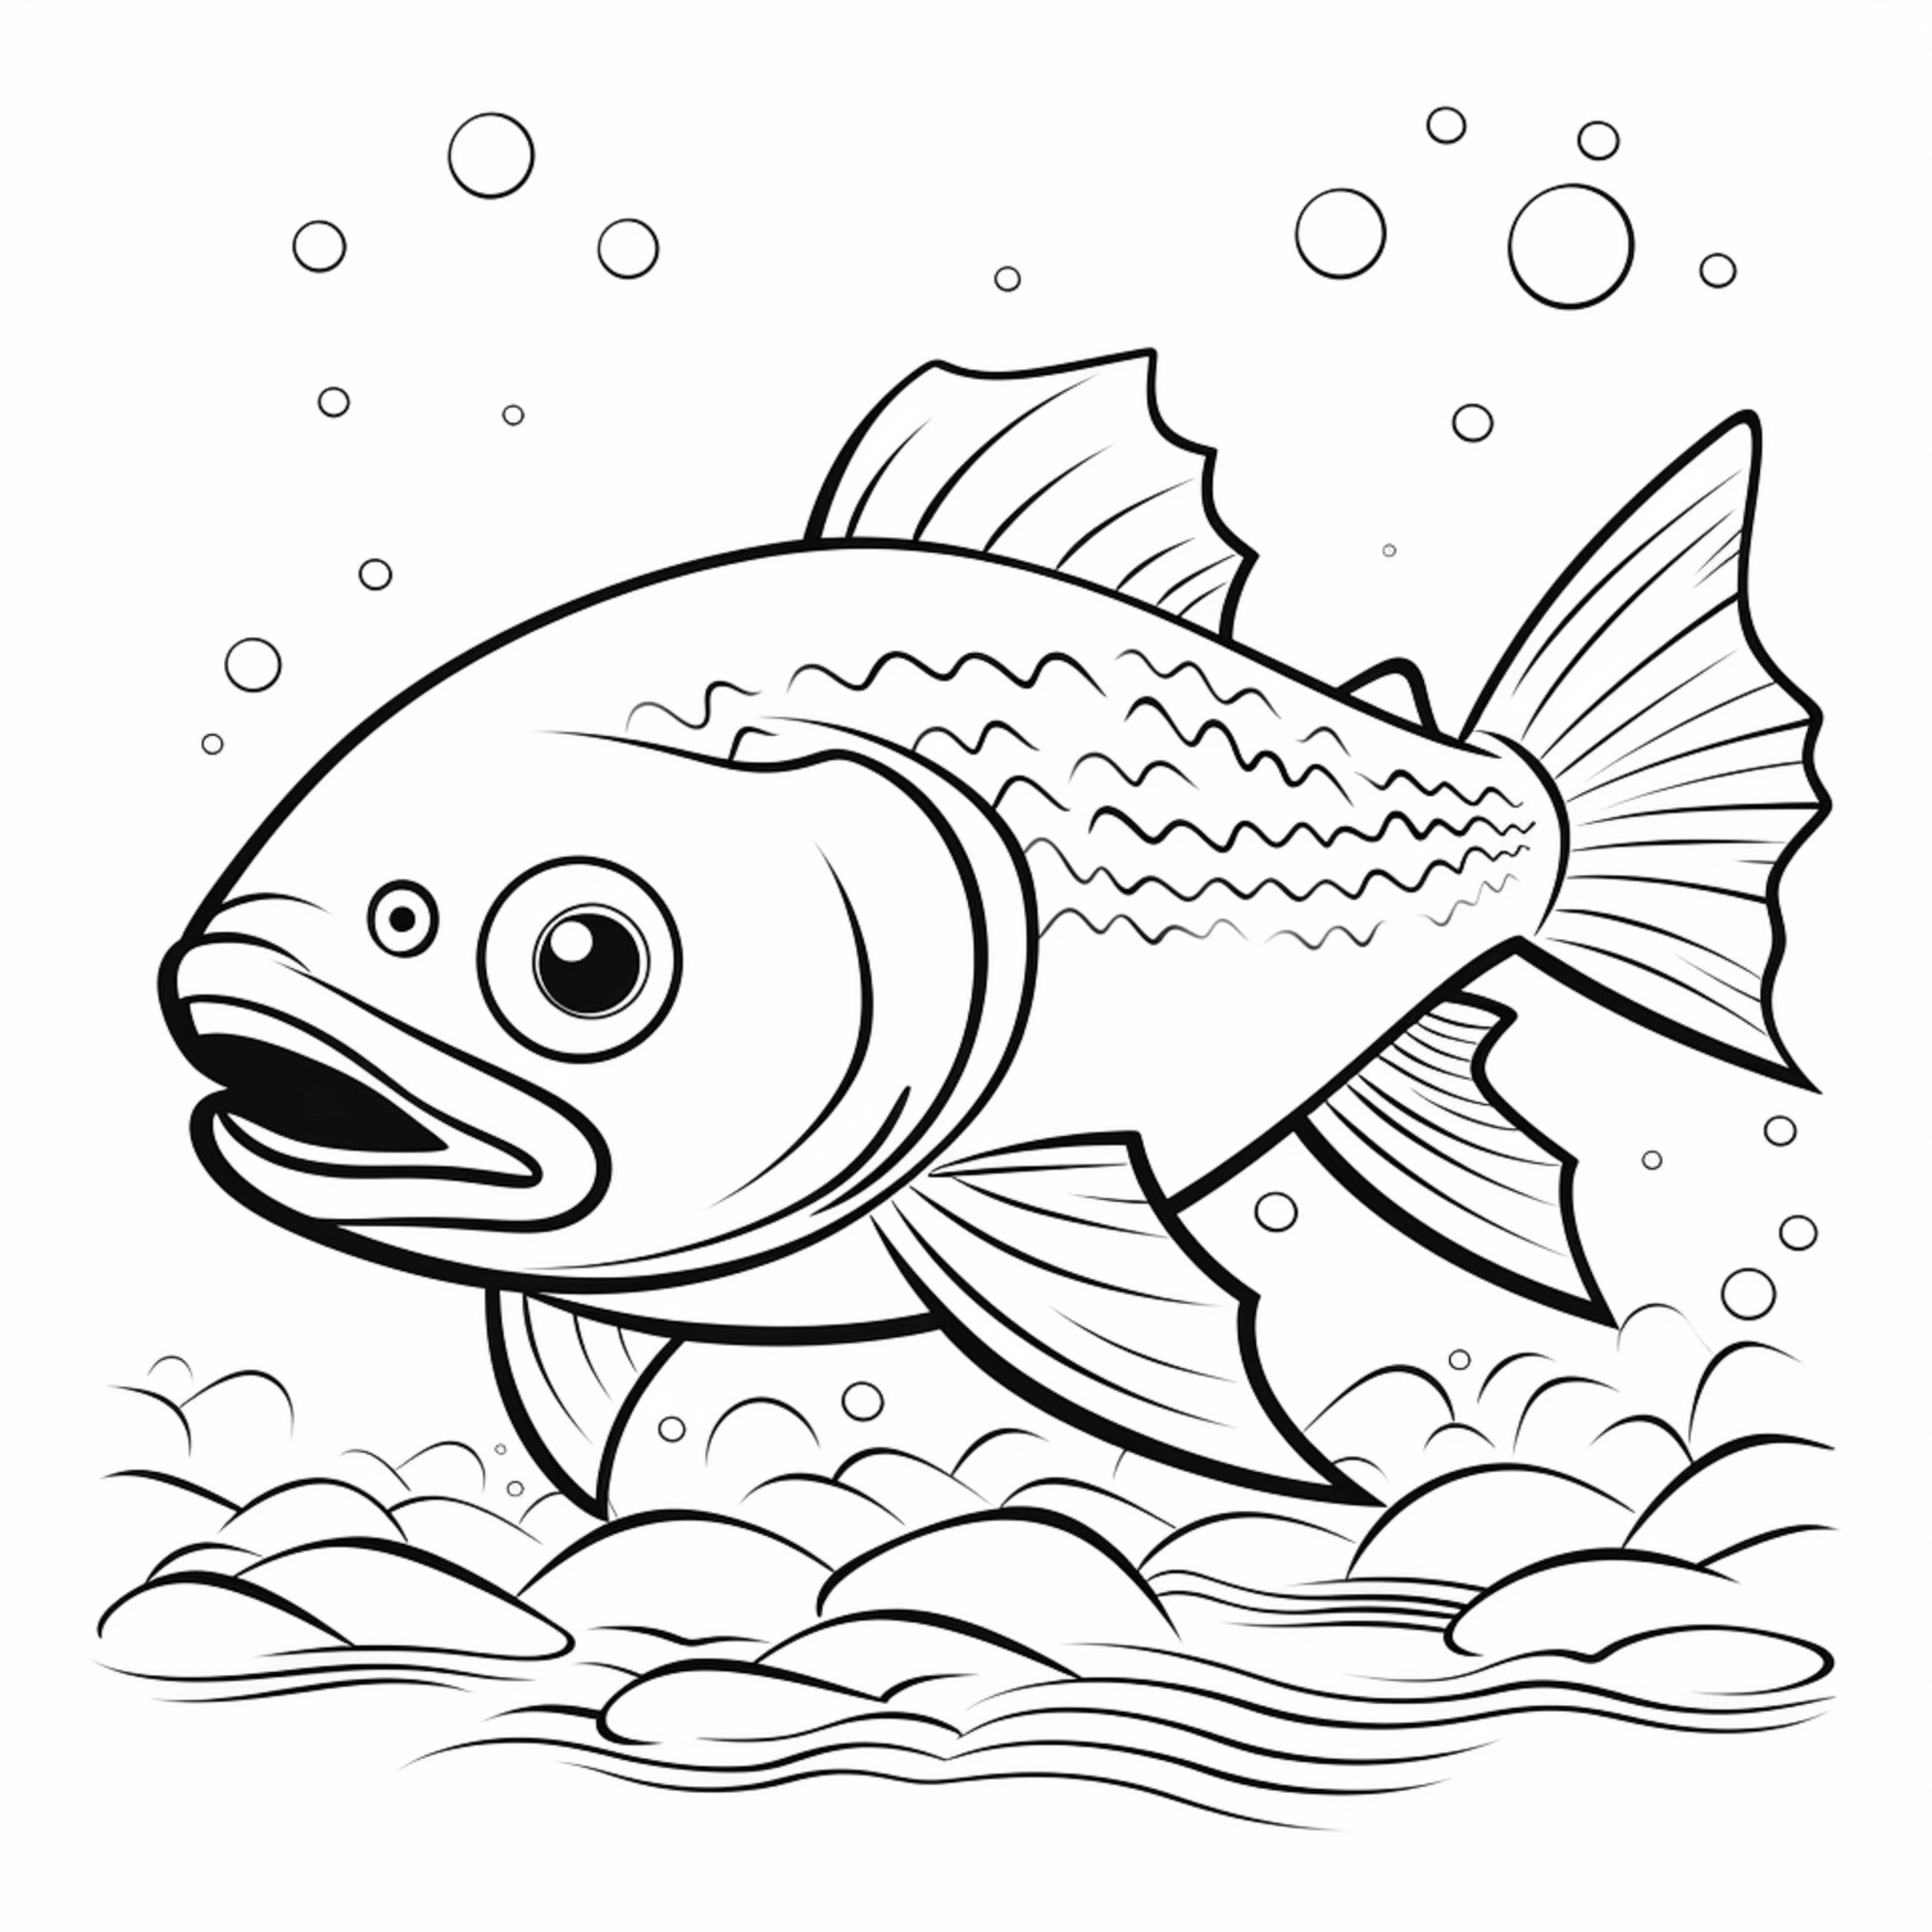 Раскраска для детей: рыба с большим ртом и большими глазами плавает в воде